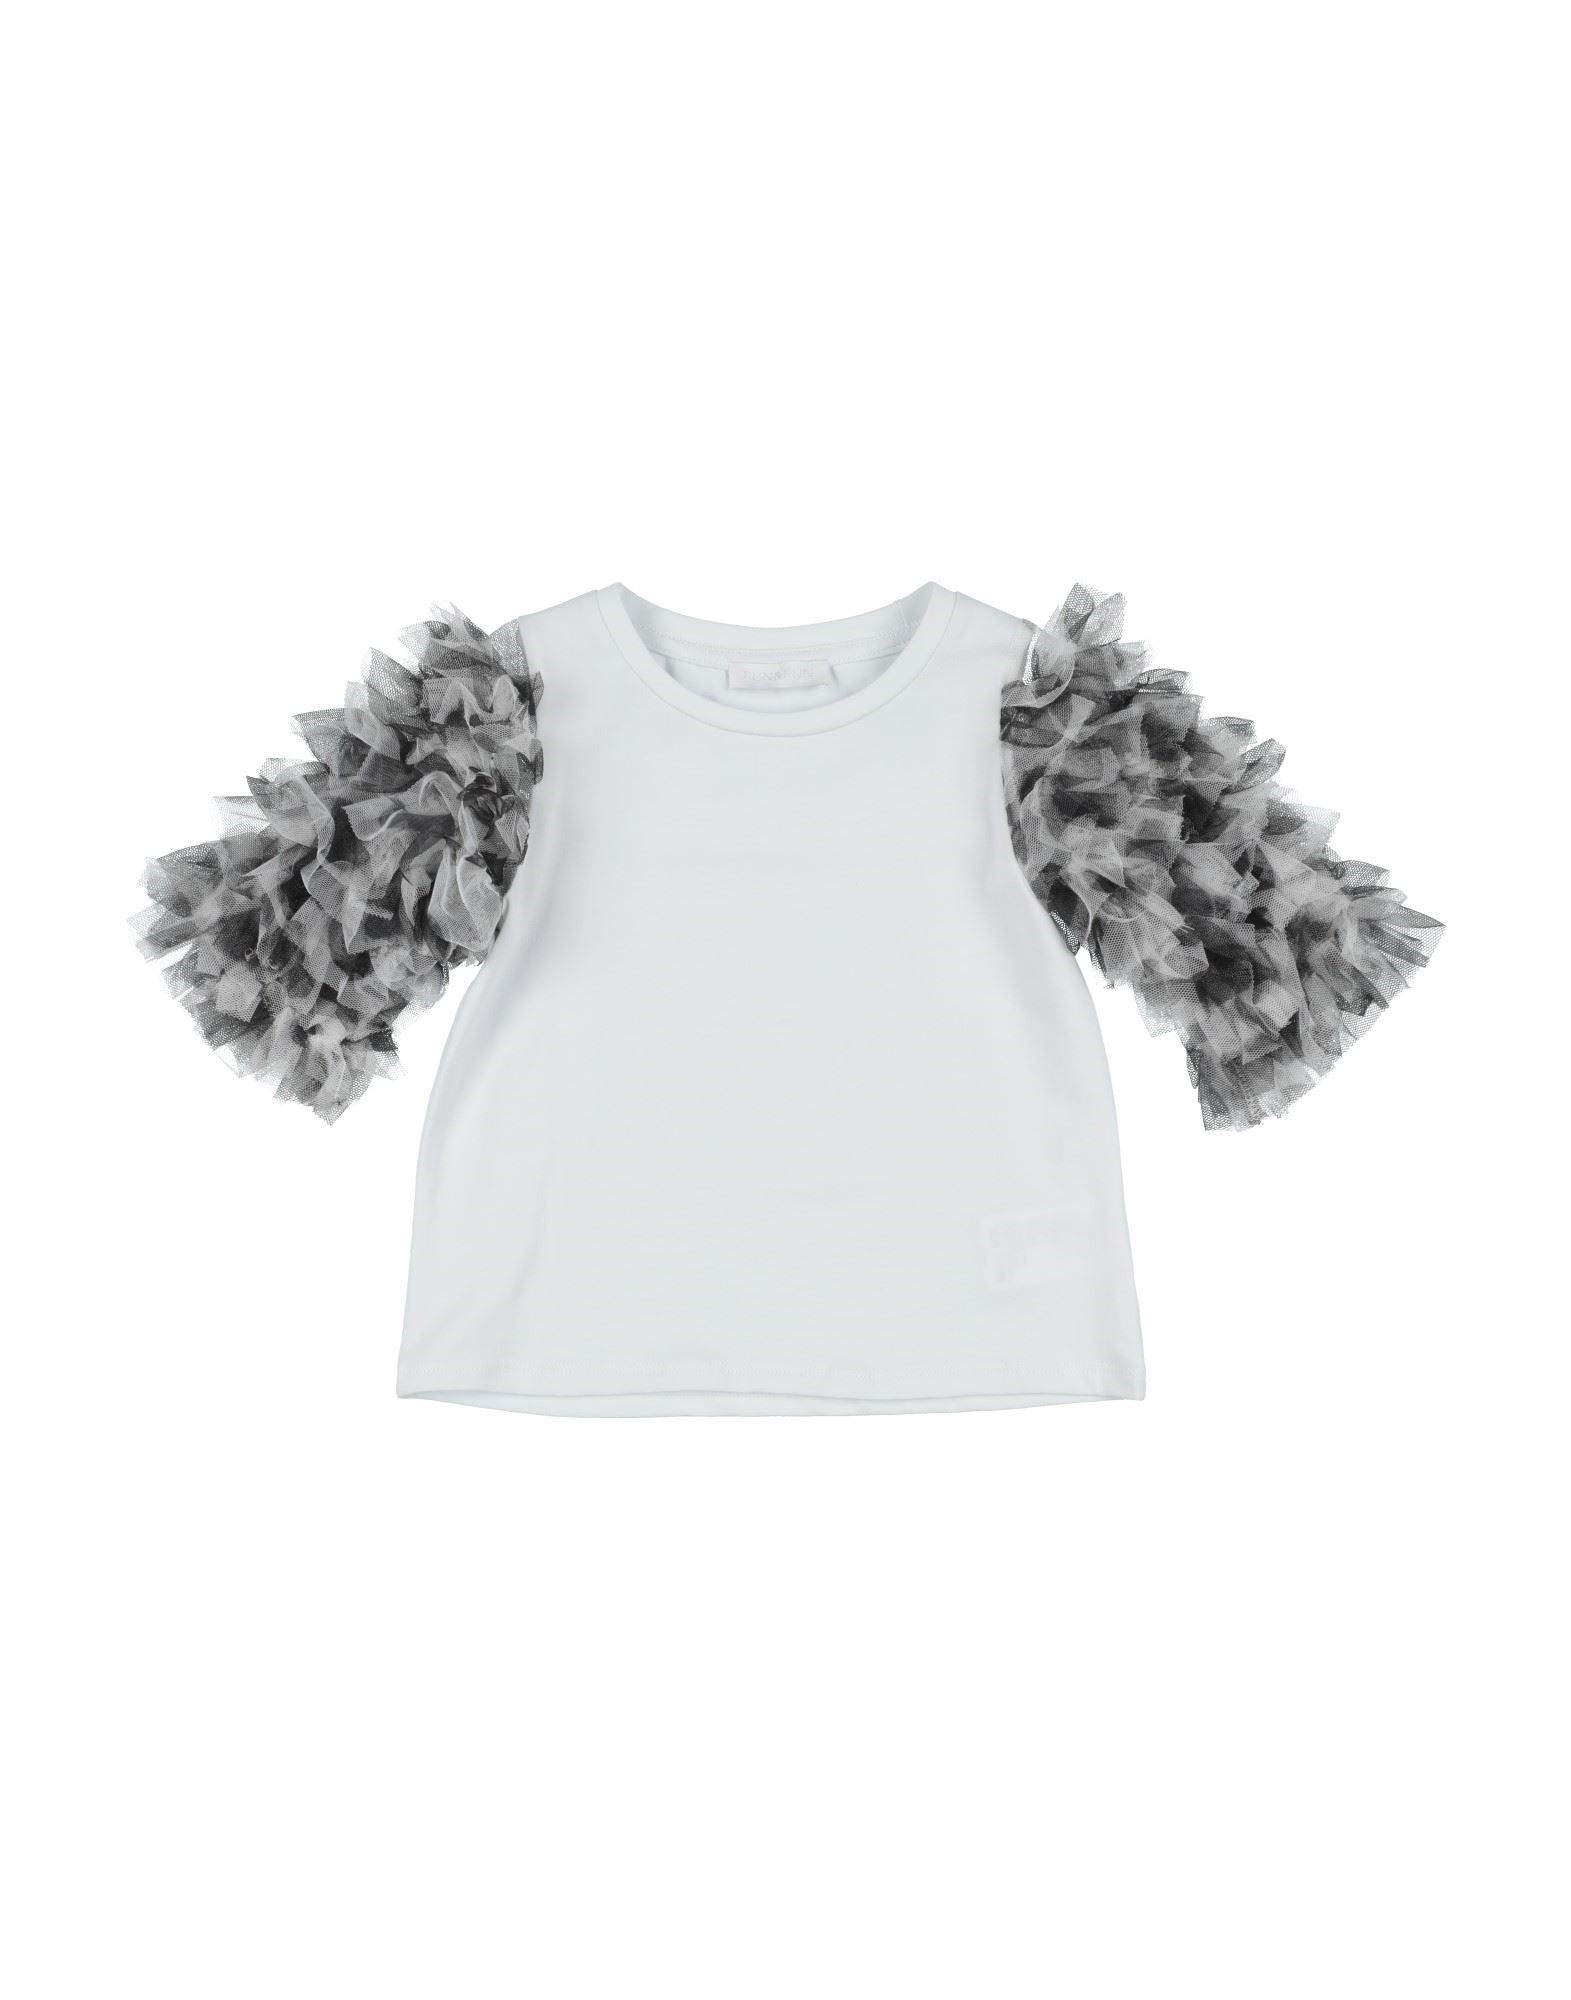 Fun & Fun Kids'  Toddler Girl T-shirt White Size 7 Cotton, Elastane